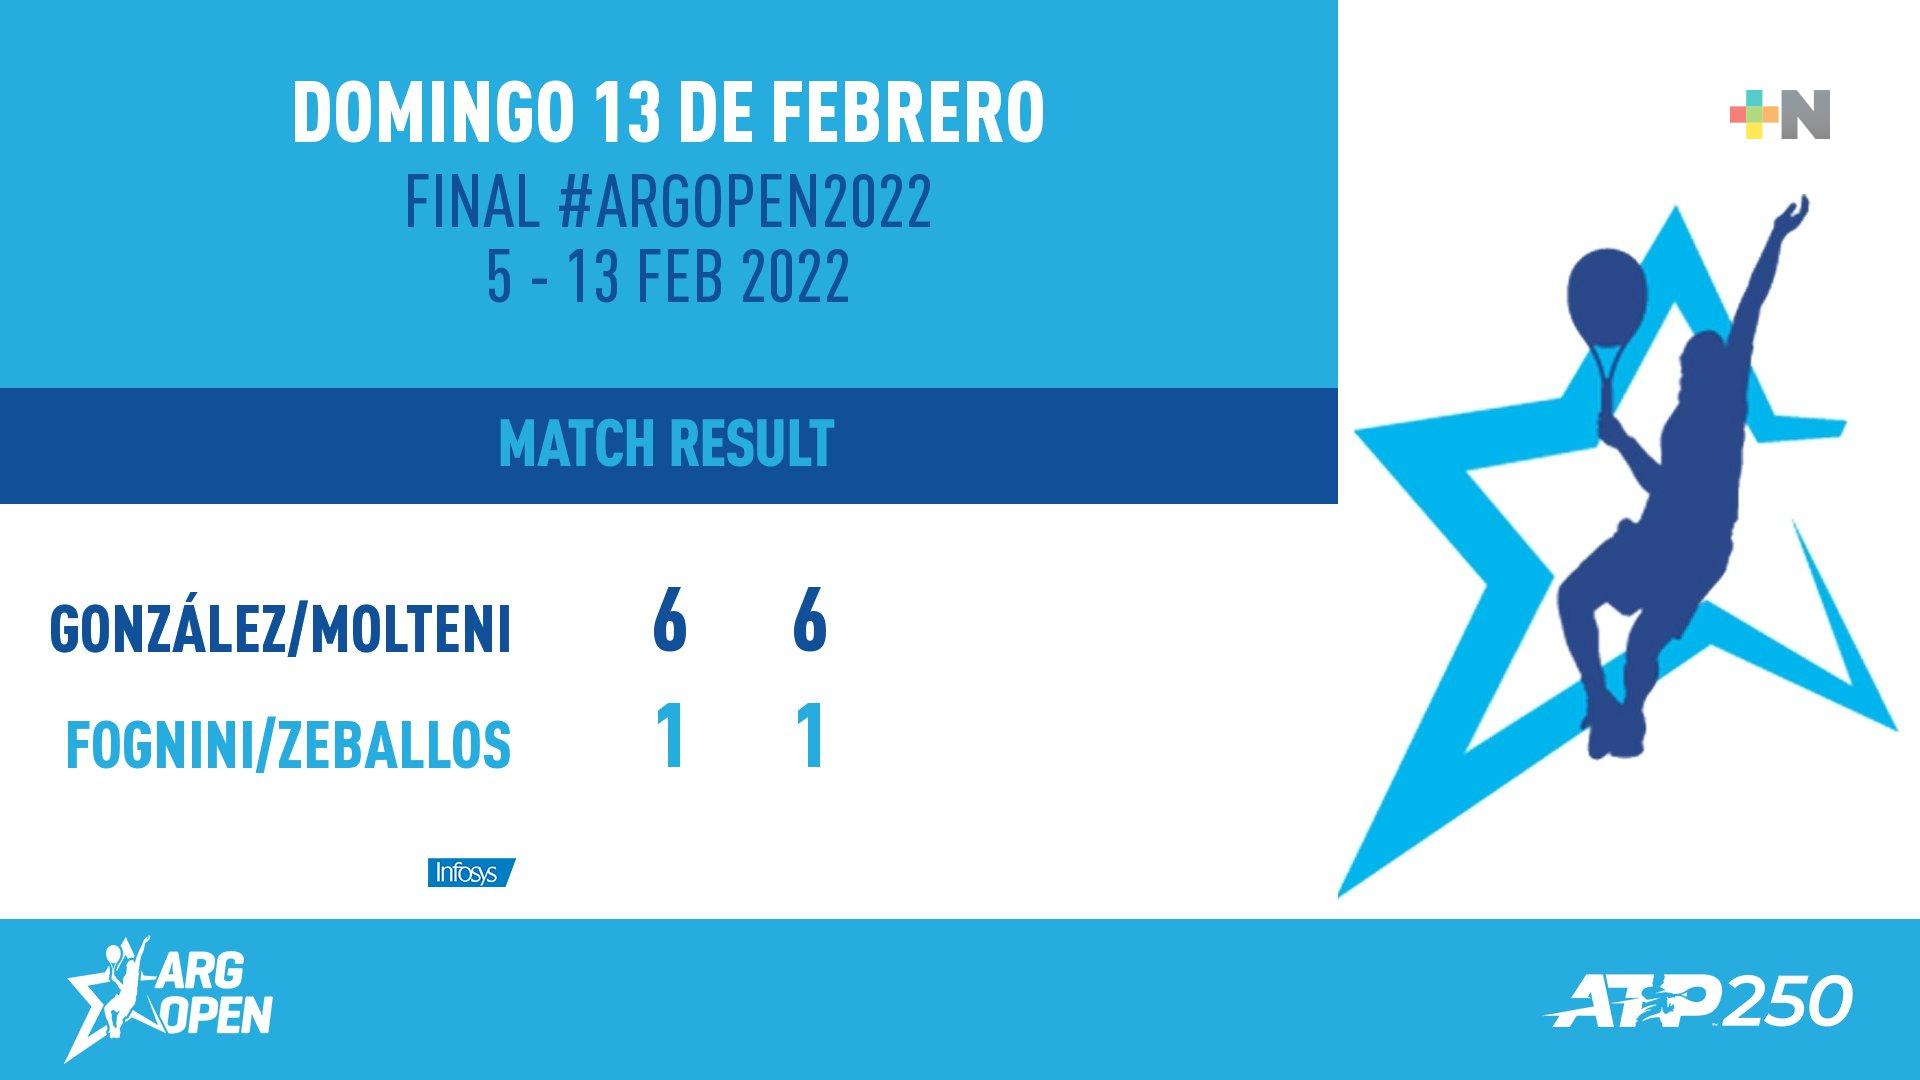 Tenista veracruzano Santiago González gana el Argentina Open 2022